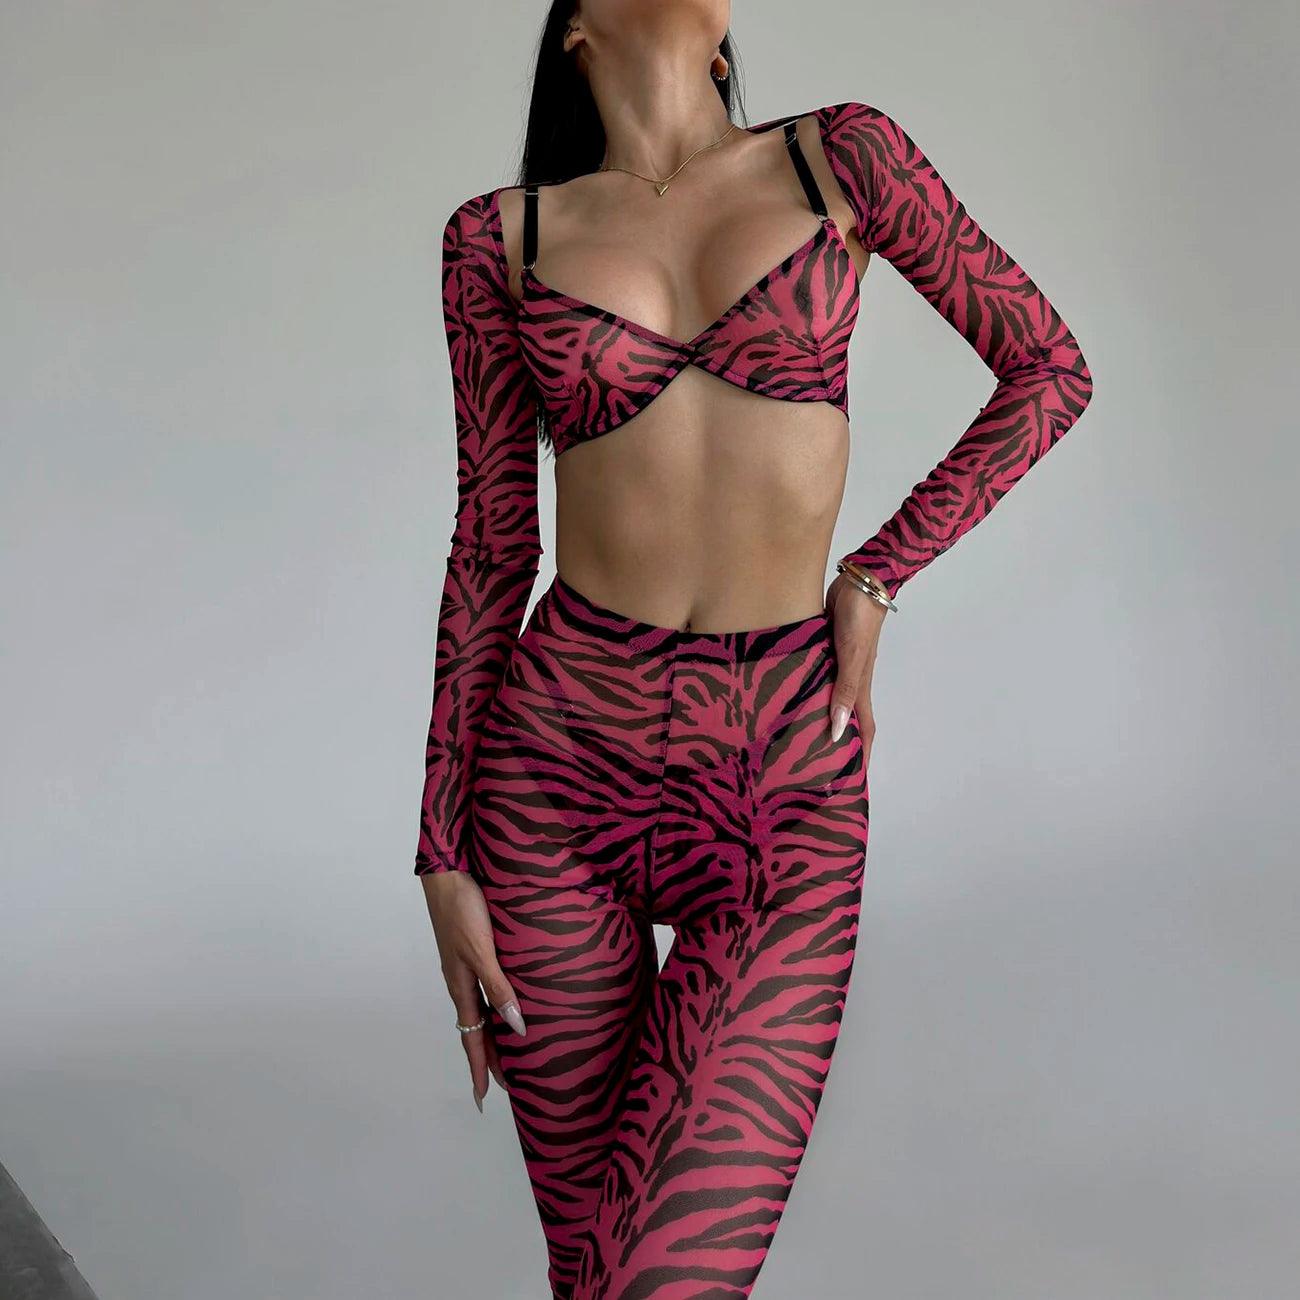 Zebra Erotiska Underkläder för Sensuella Stunder - WIQ